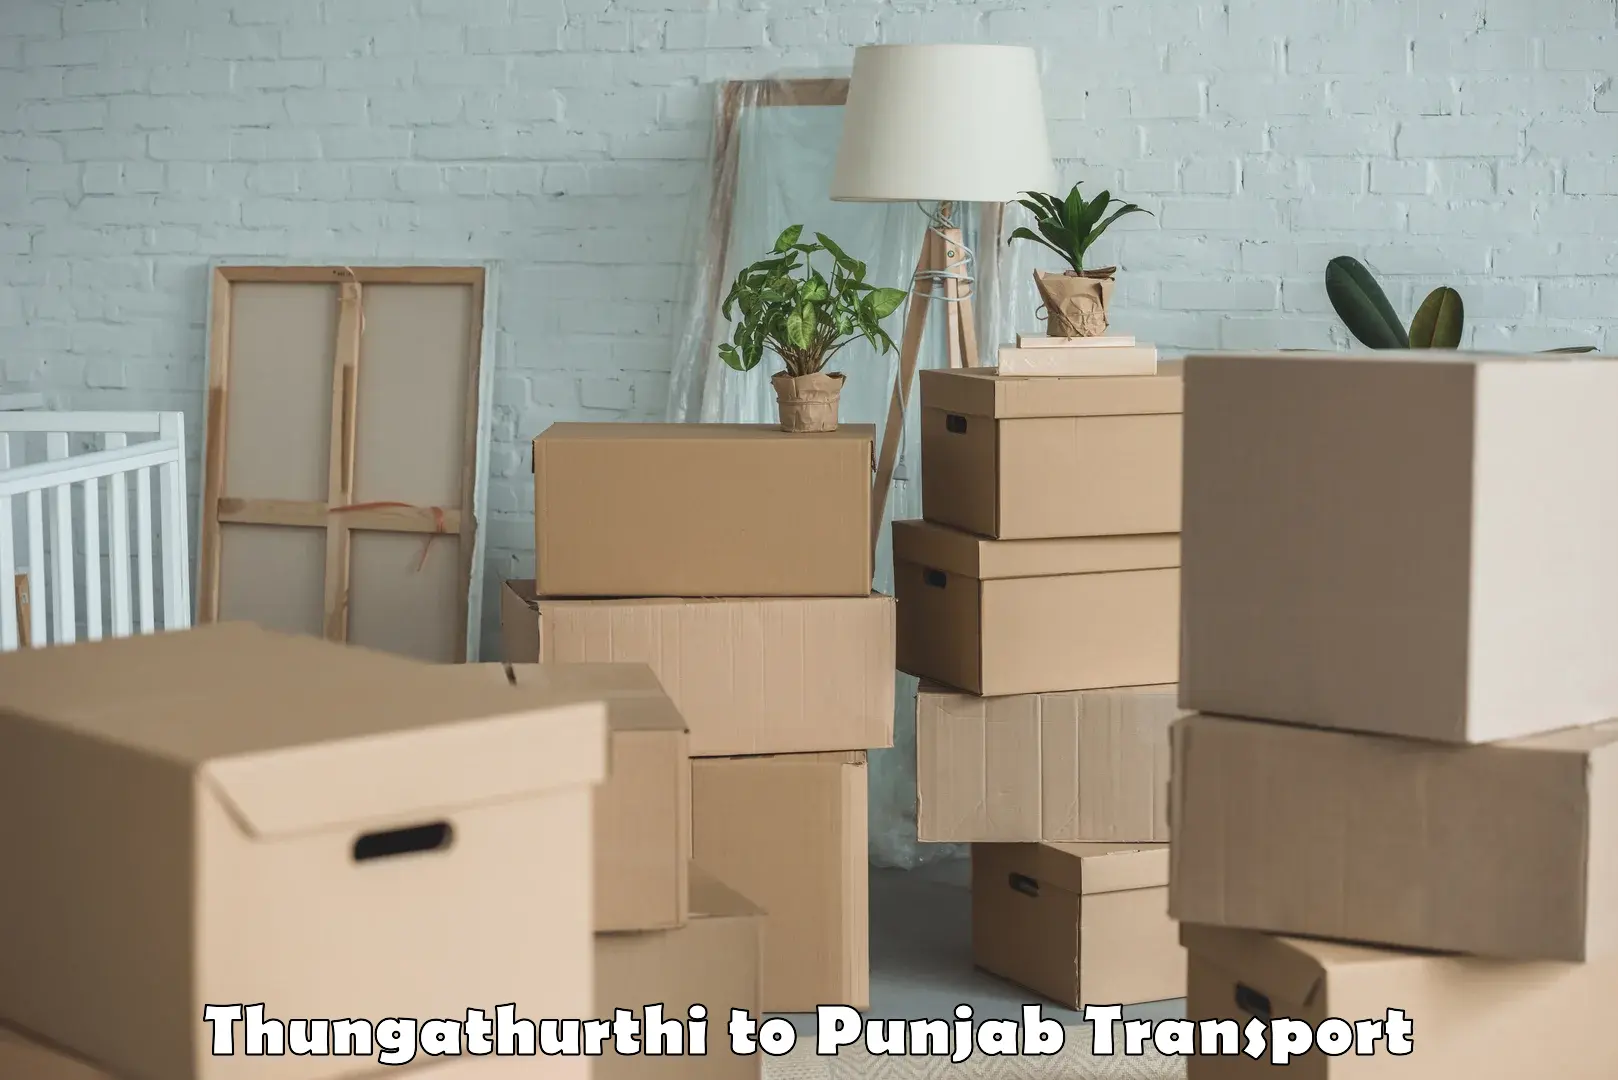 Shipping services Thungathurthi to Punjab